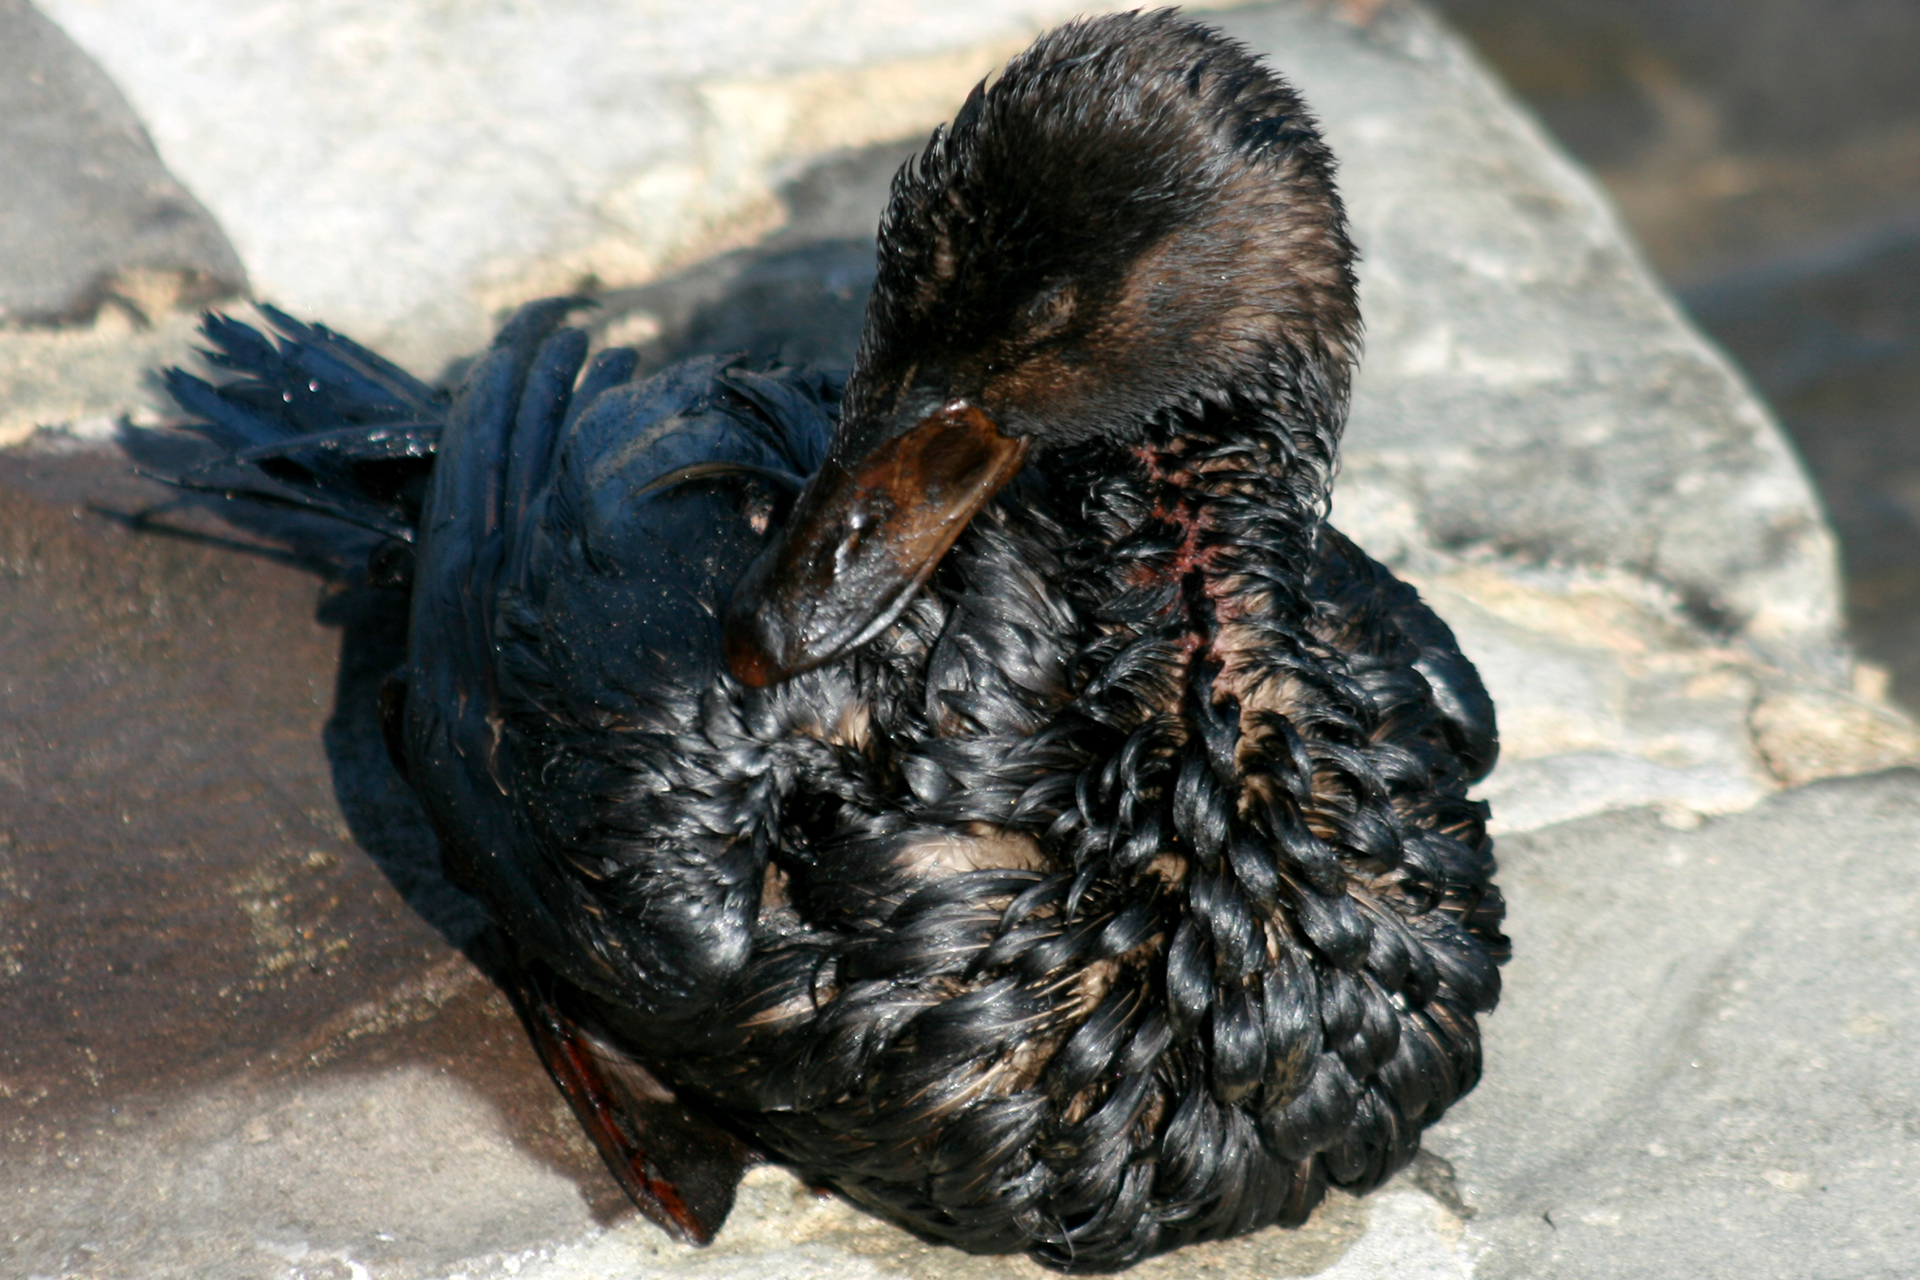 Fotografia prezentuje kaczkę pokrytą czarna ropa naftową.